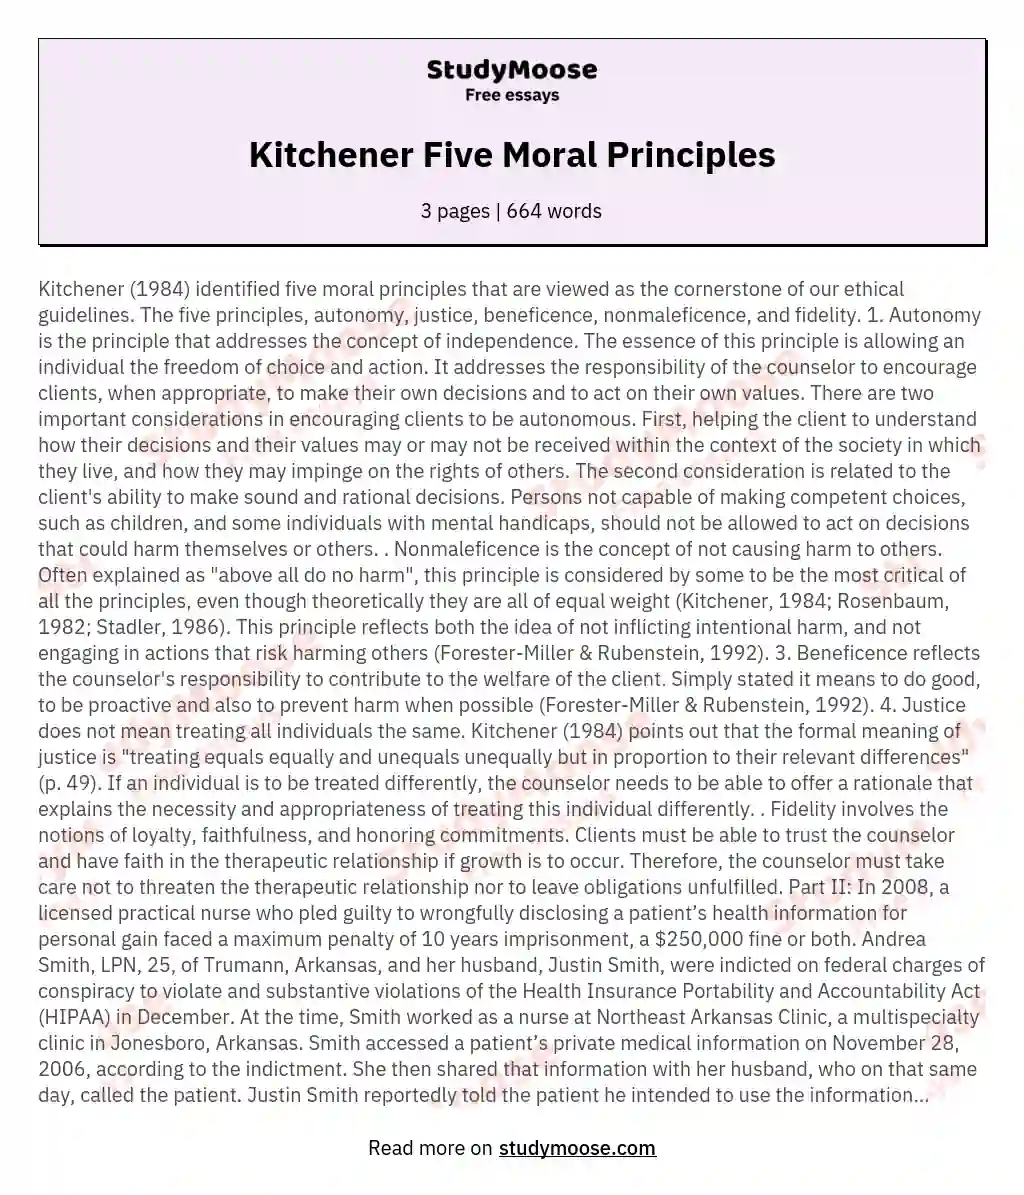 Kitchener Five Moral Principles essay